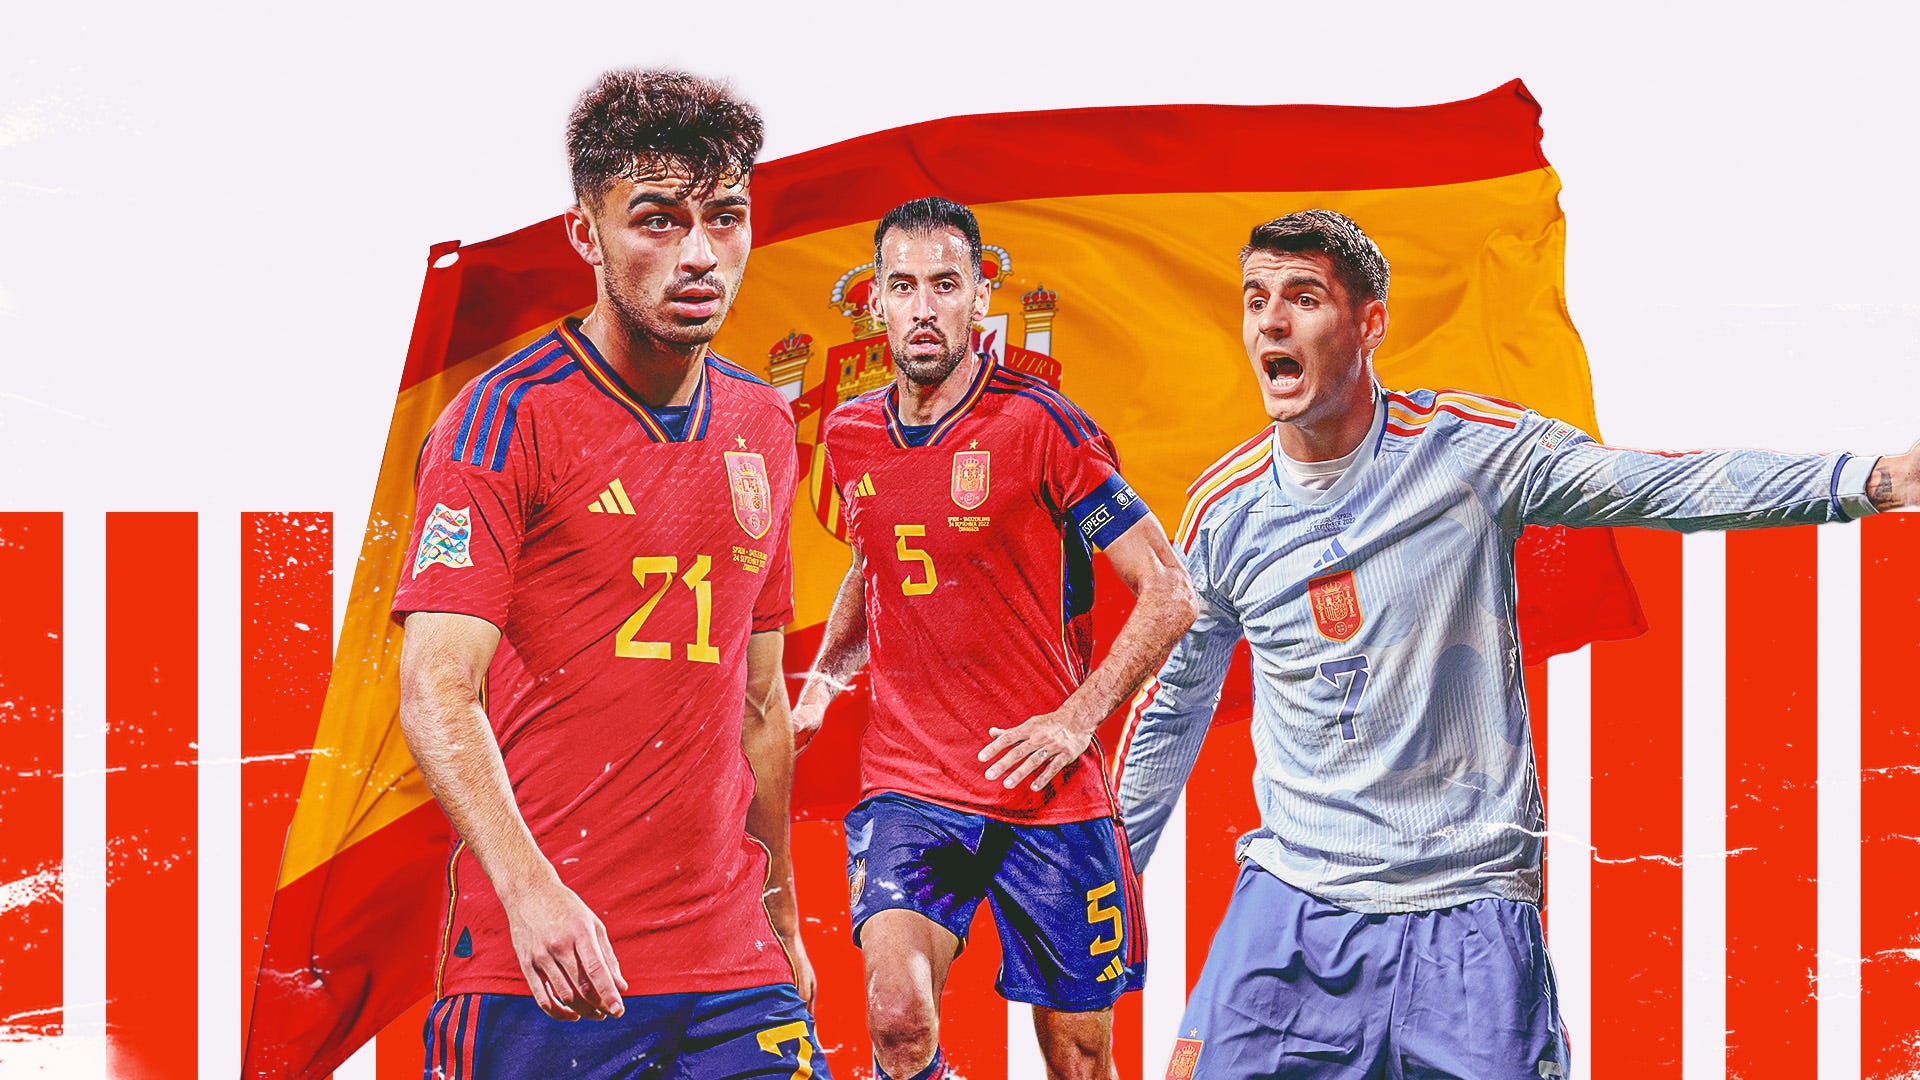 Spain World Cup: World Cup là sự kiện thể thao lớn nhất thế giới. Xem hình ảnh của đội tuyển bóng đá Tây Ban Nha trong cuộc thi năm 2010 và cảm nhận niềm đam mê của các cầu thủ và fan hâm mộ bóng đá.